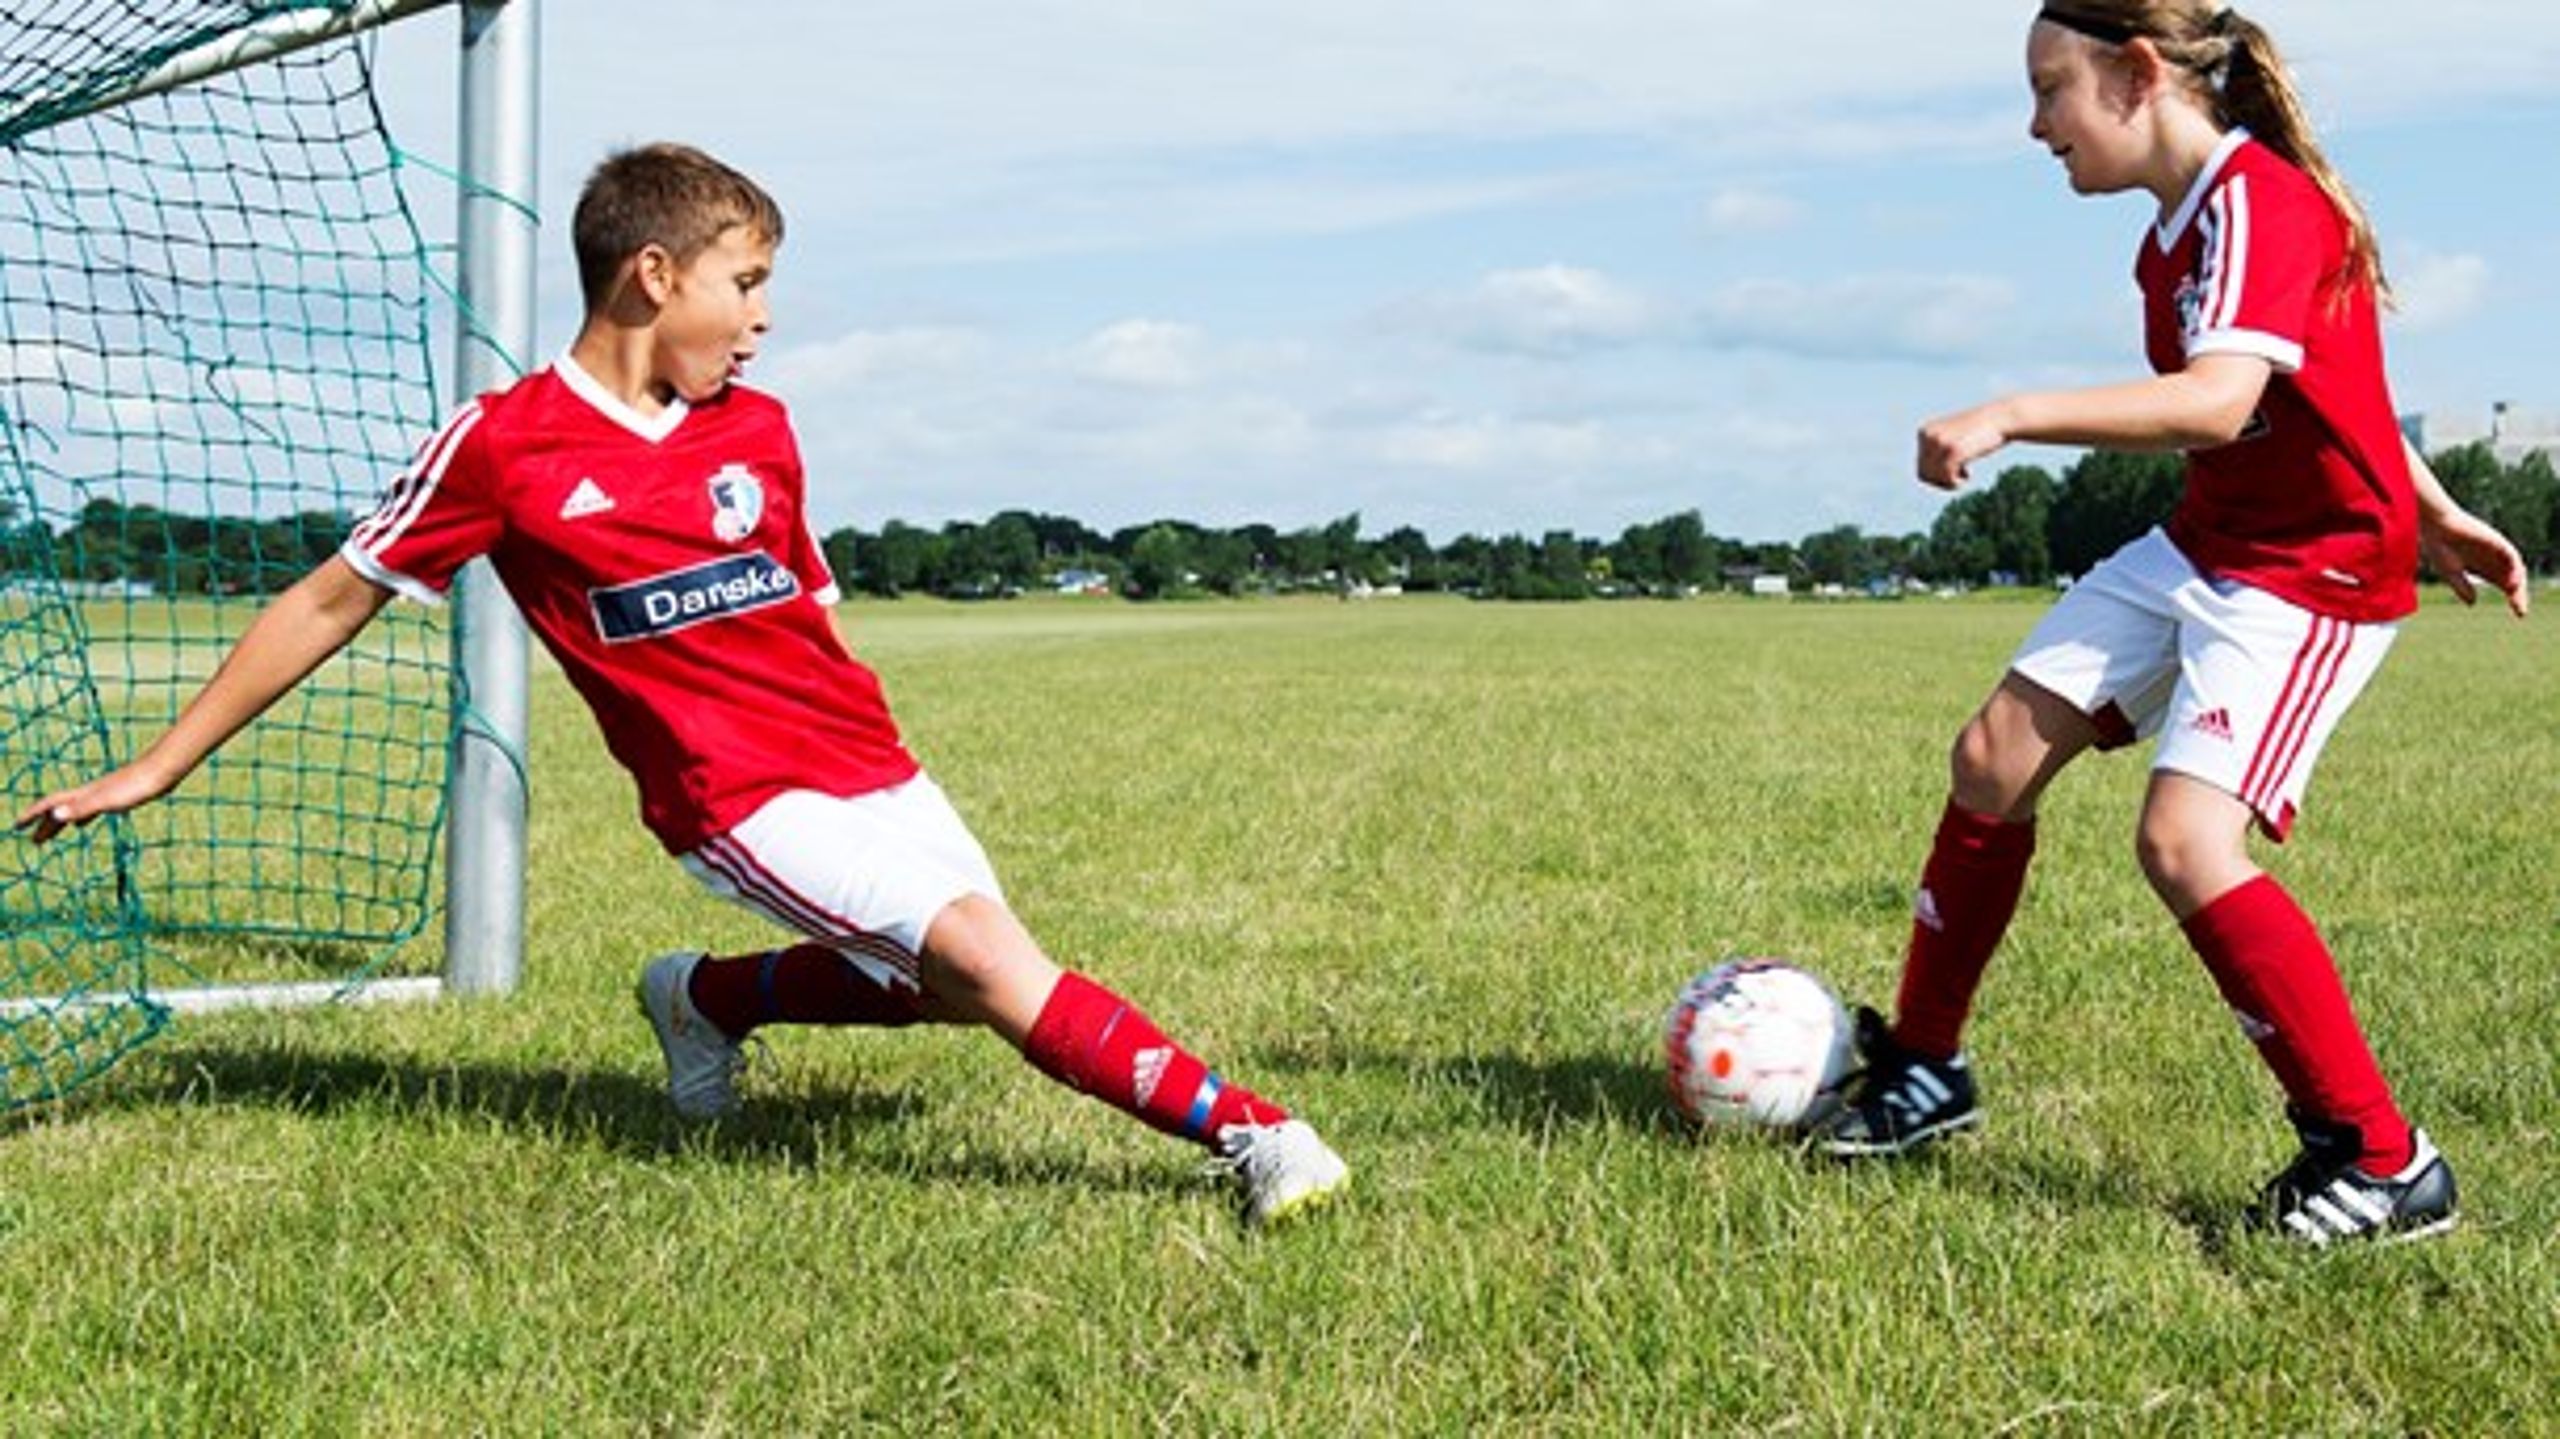 Mange af de børn, som starter med at spille eksempelvis fodbold i et udsat boligområde, ender med at spille fodbold i foreninger uden for disse områder, skriver&nbsp;Bent Clausen og Hans Natorp.